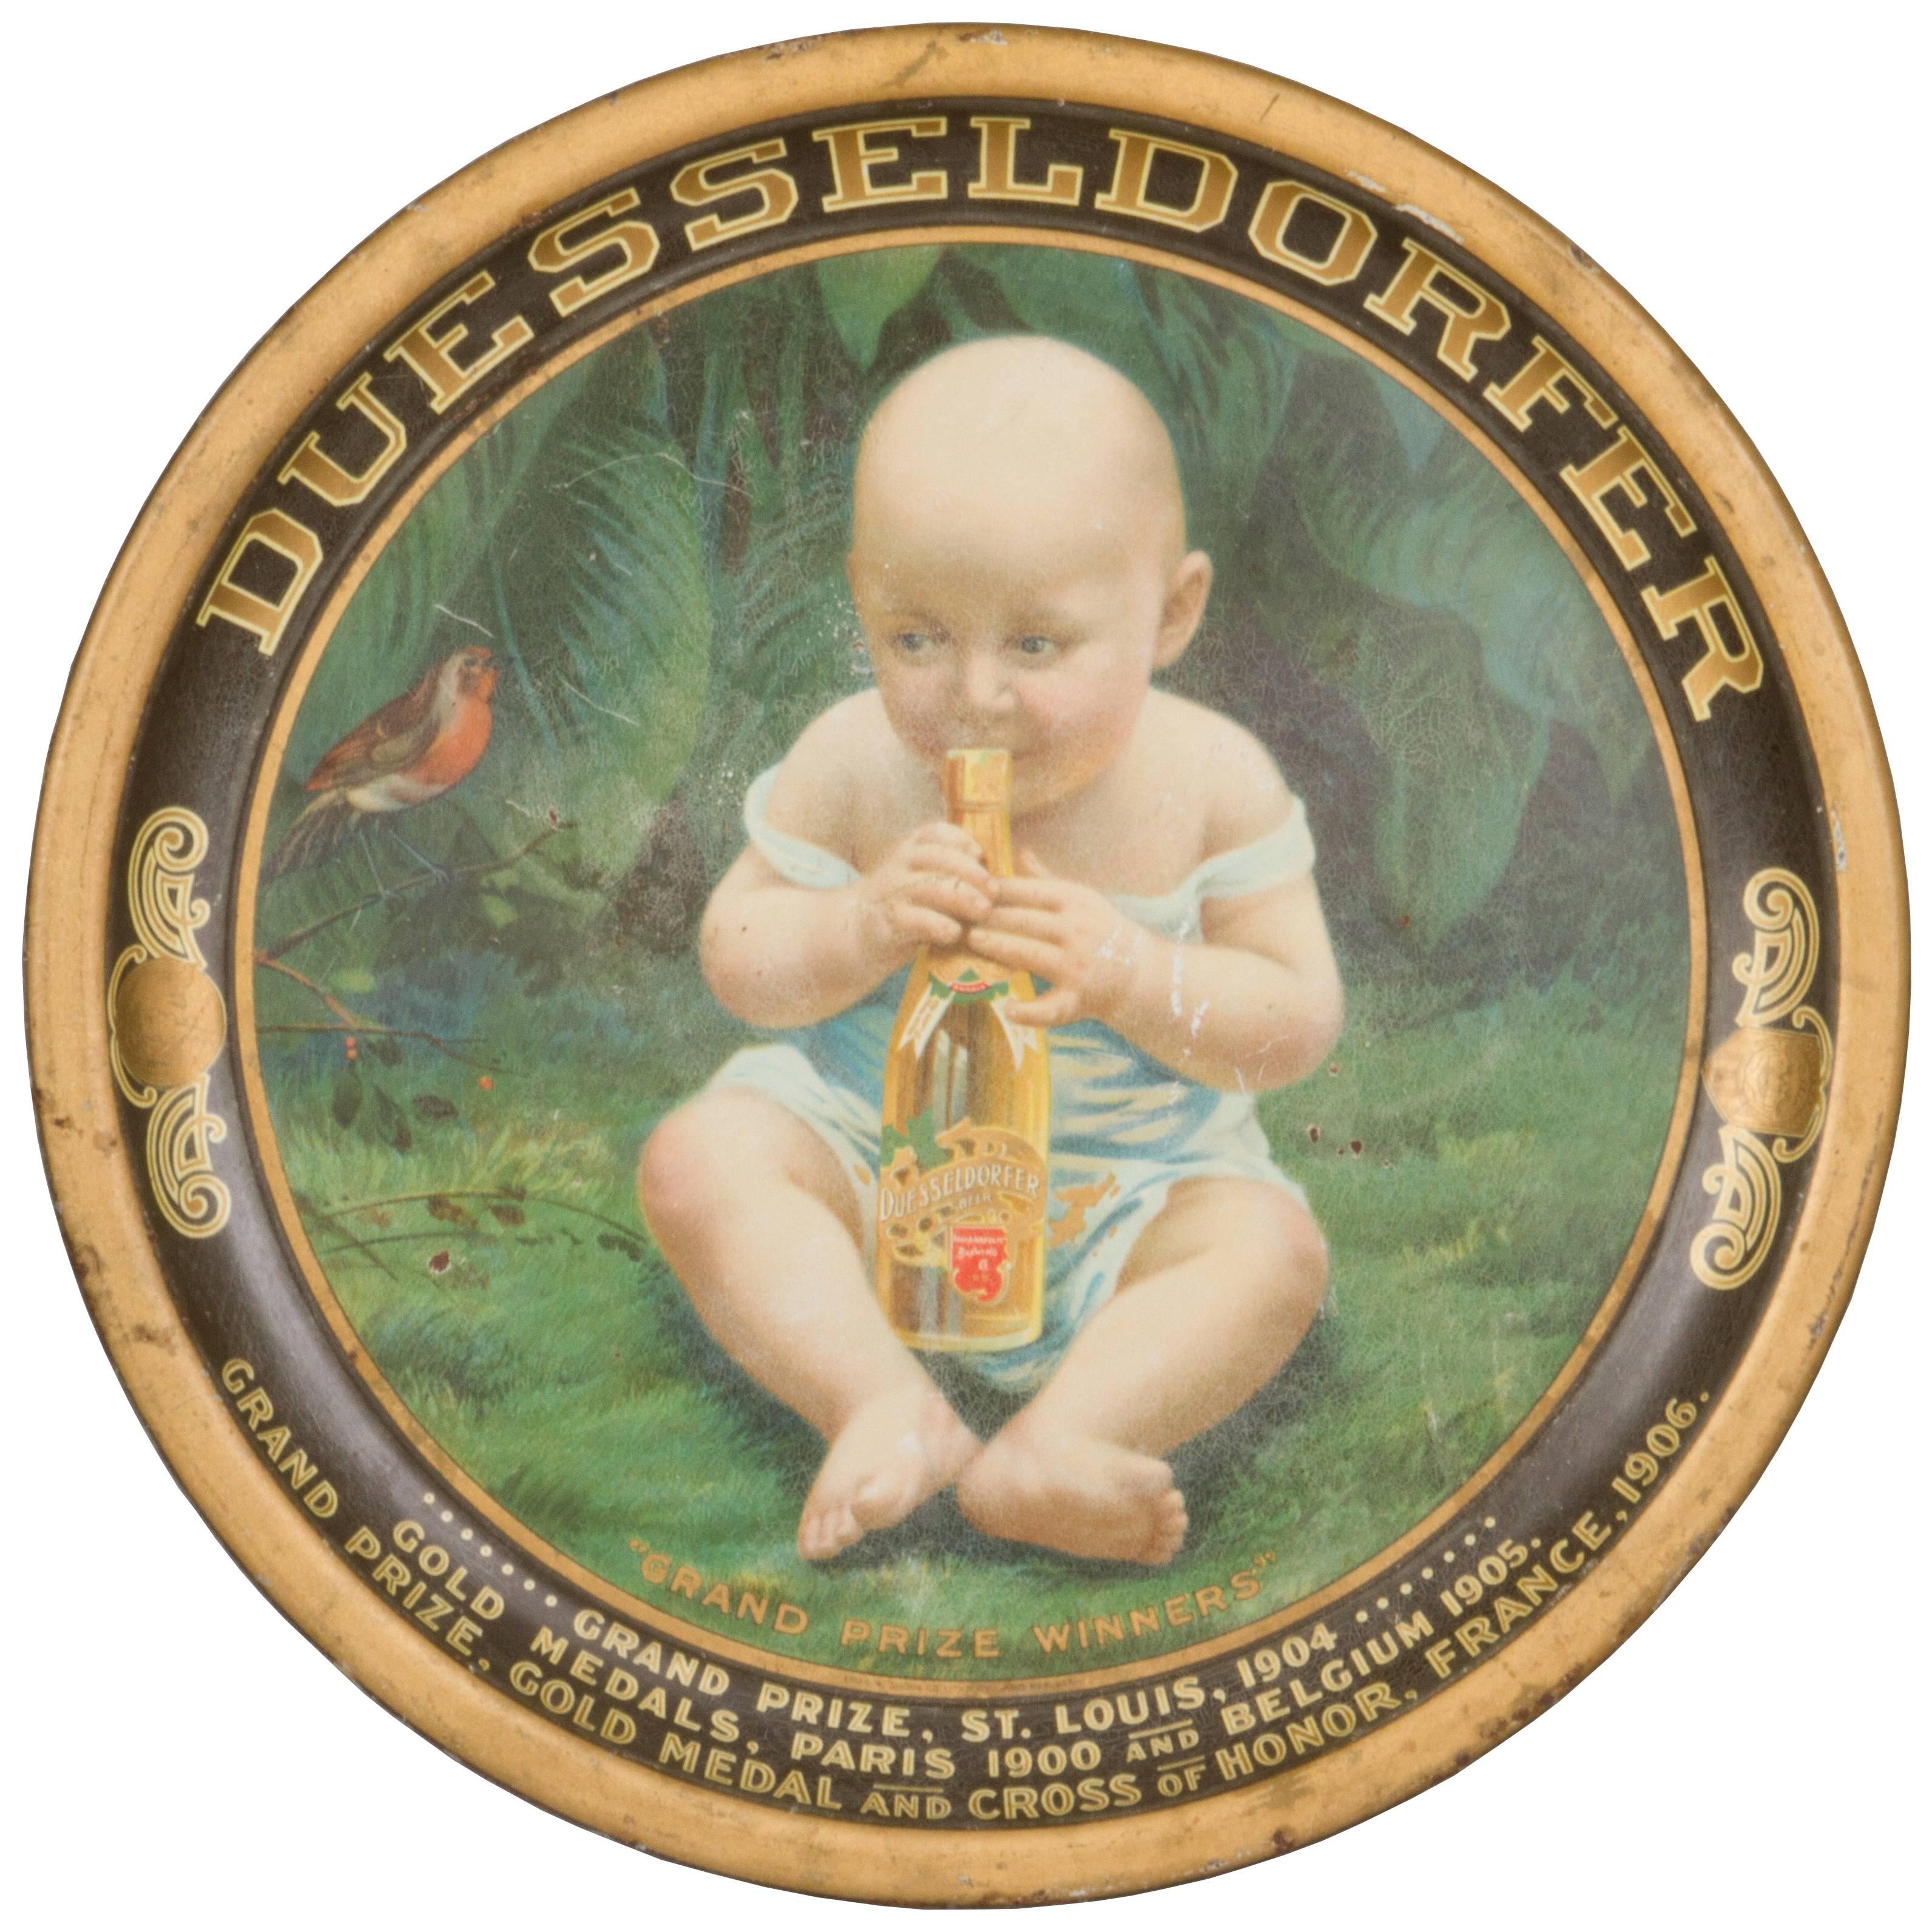 Rare Duesseldorfer Beer Award Tray